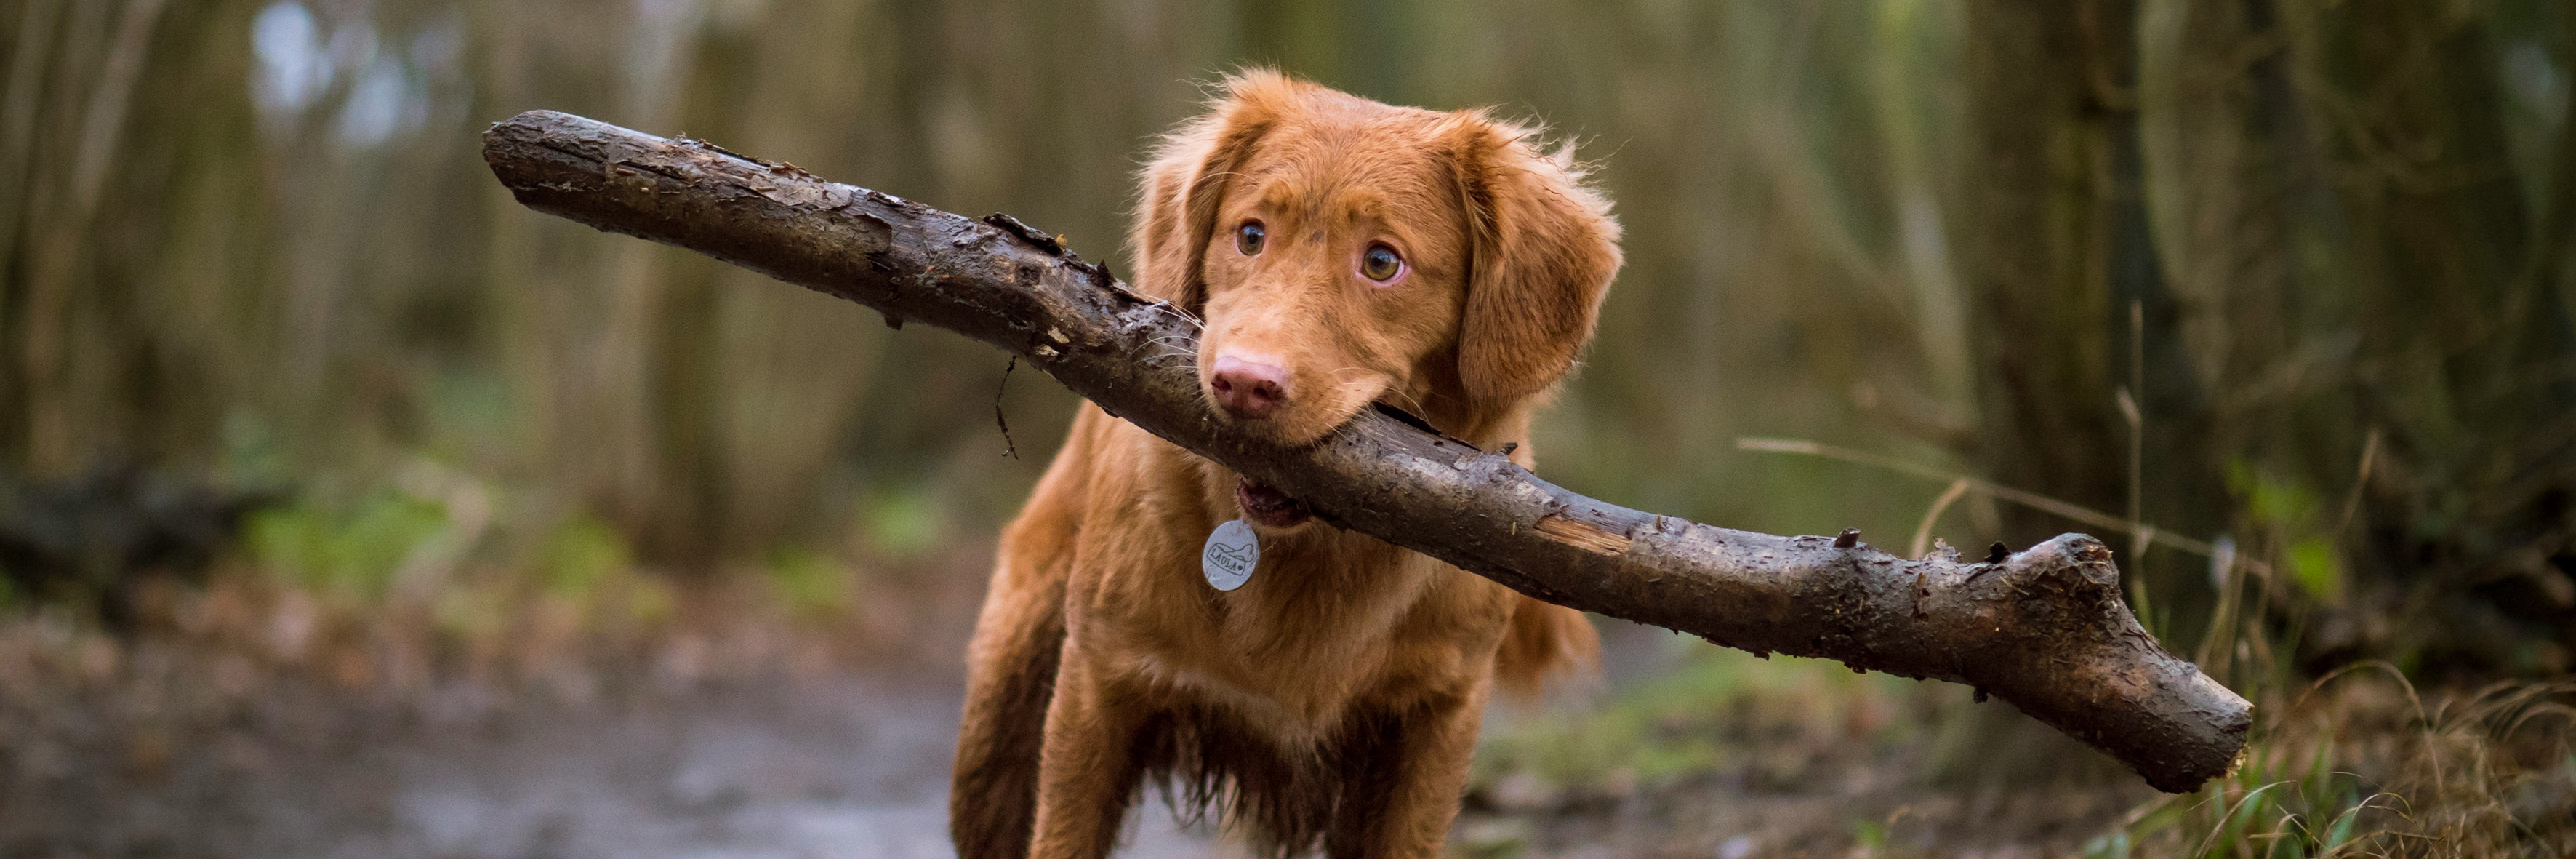 Een bruine hond in het bos met een stok in zijn bek.